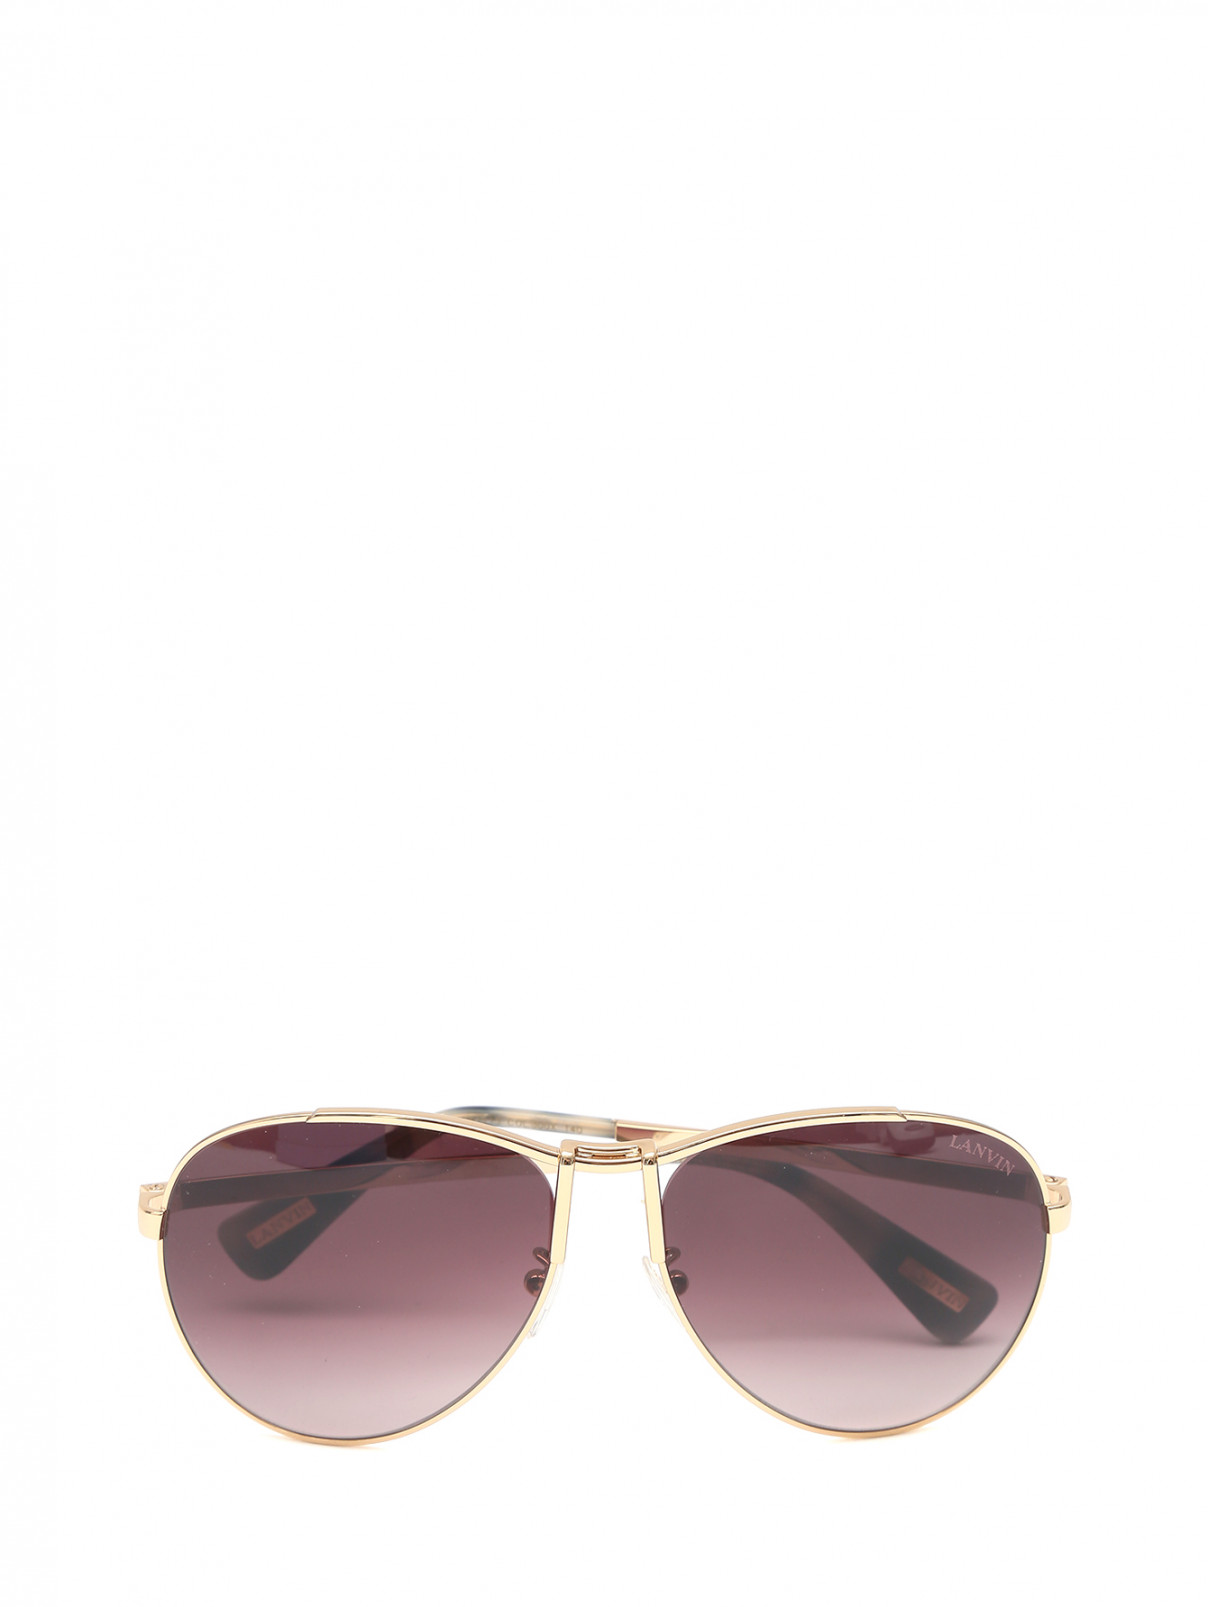 Cолнцезащитные очки в оправе из металла Lanvin  –  Общий вид  – Цвет:  Металлик